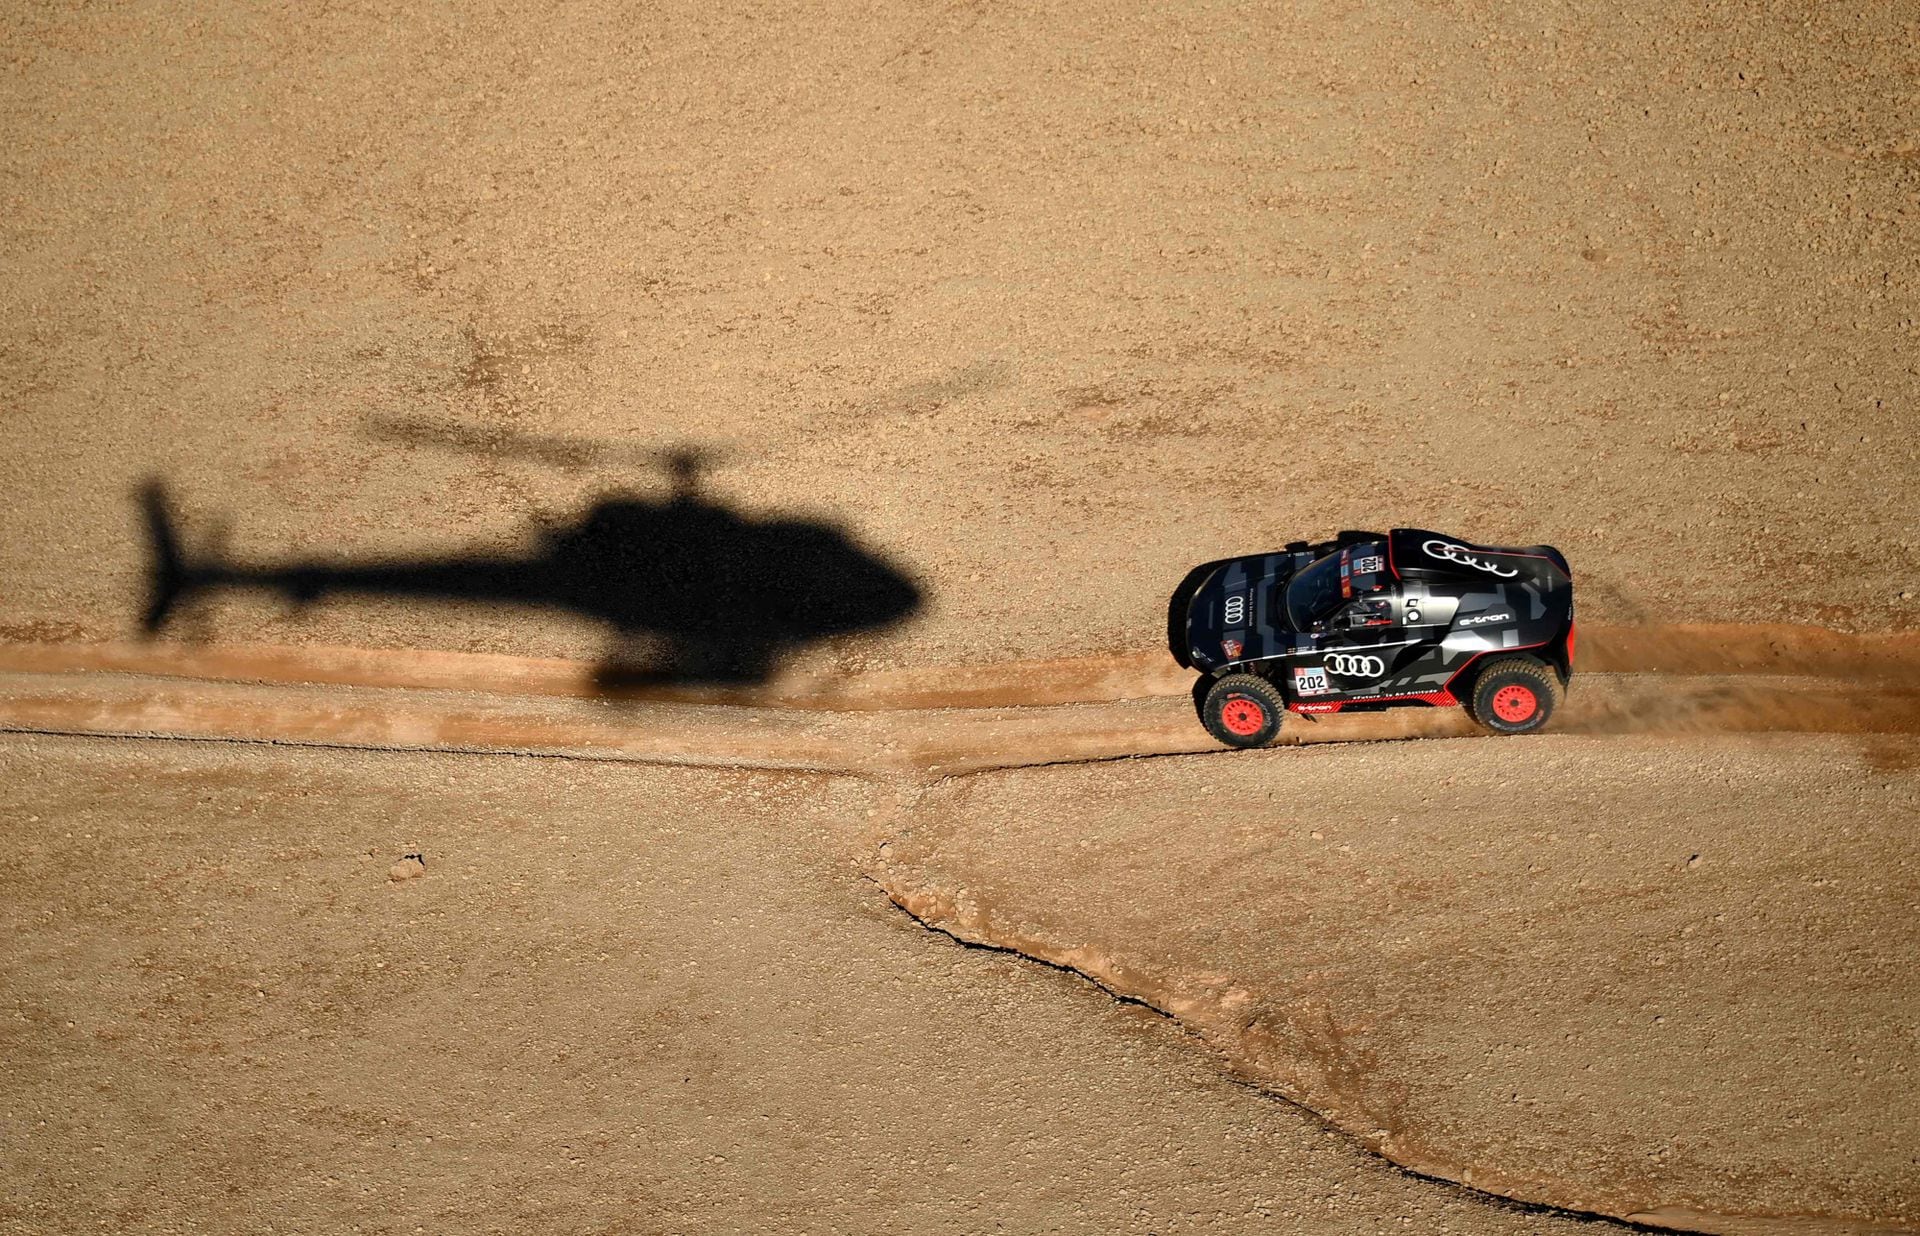 El piloto español de Audi Carlos Sainz y su copiloto Lucas Cruz de España compiten durante la etapa 5 del Dakar 2022 alrededor de Riad en Arabia Saudita, el 6 de enero